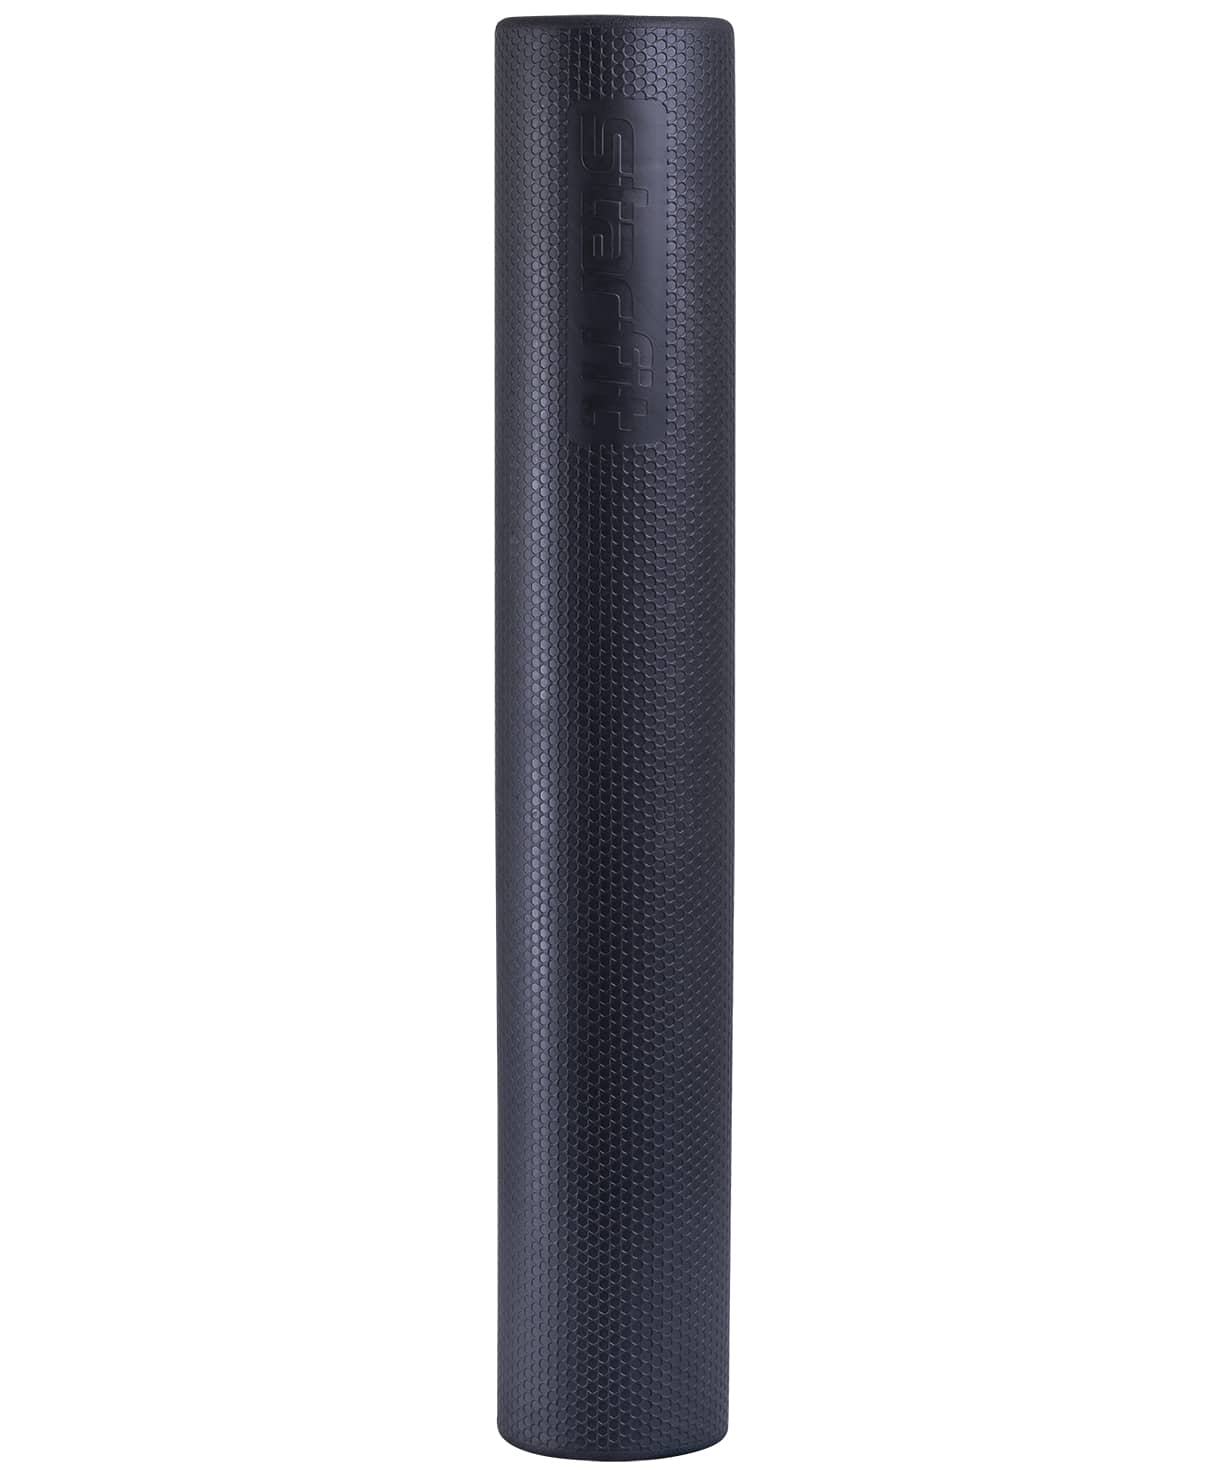 Ролик массажный FA-520, 15x90 cм, универсальный, черный